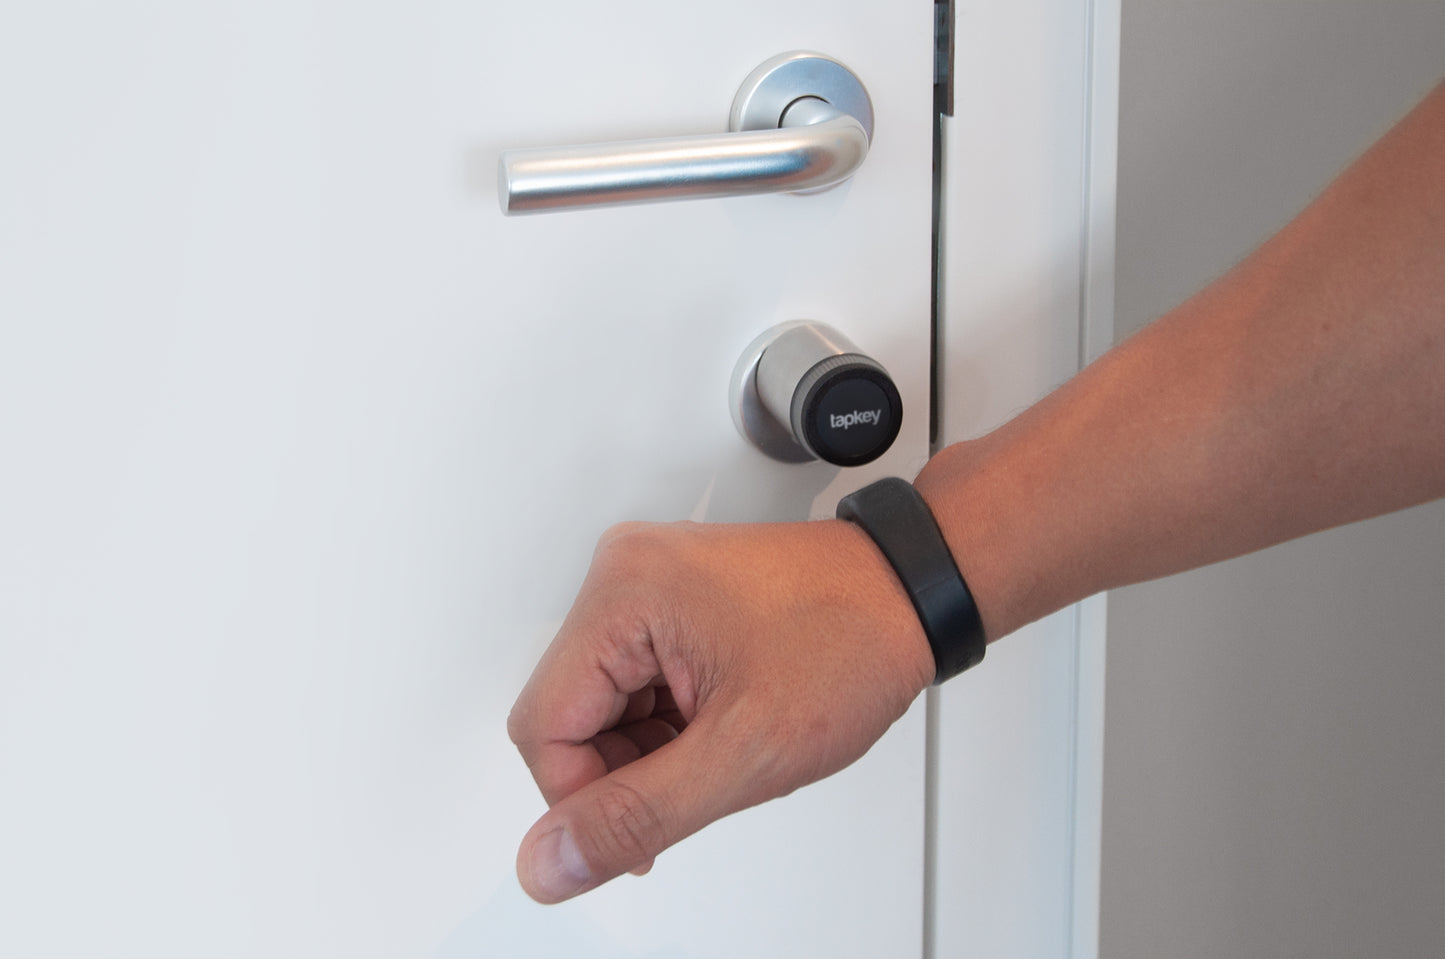 NFC Wristband to open doors. Perfect for gyms. | NFC-Armband zum Öffnen von Türen. Smarter Zutritt für Fitnessstudios.